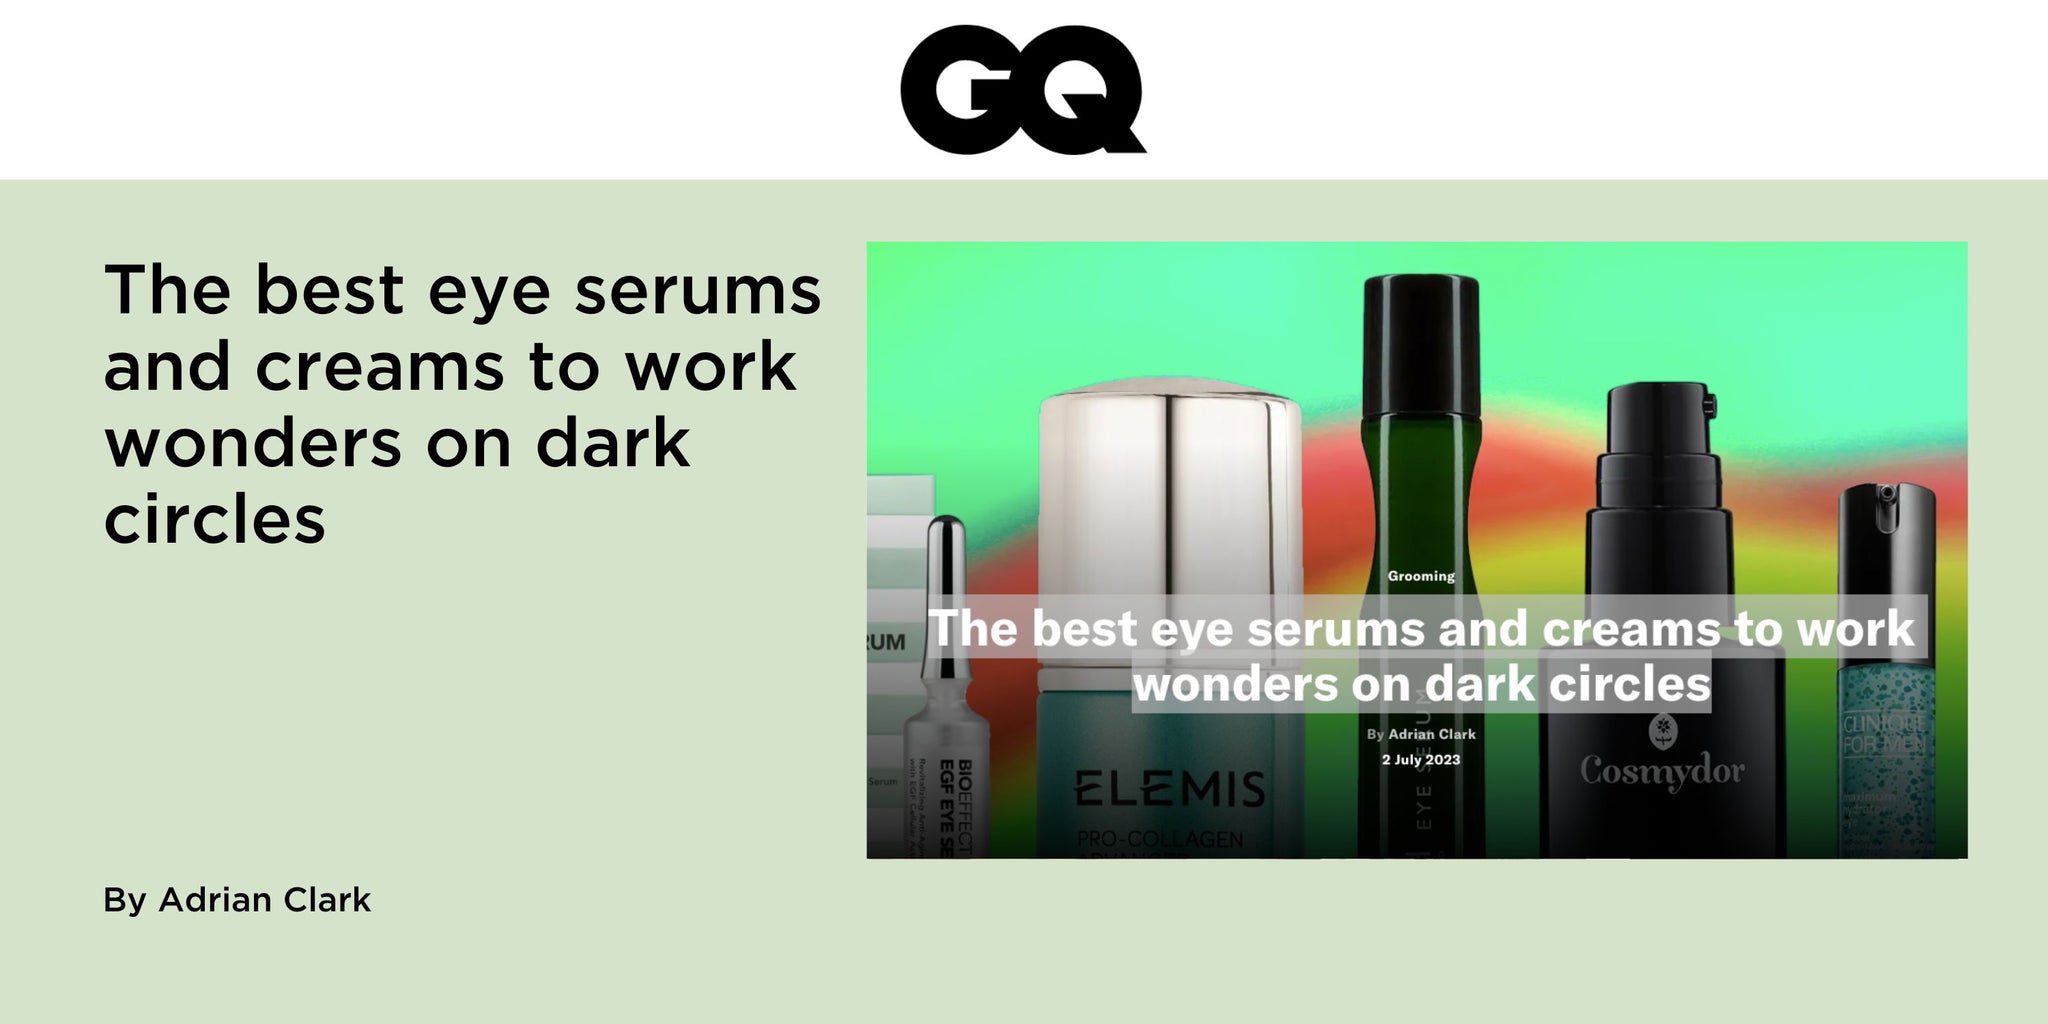 The best eye serums and creams to work wonders on dark circles